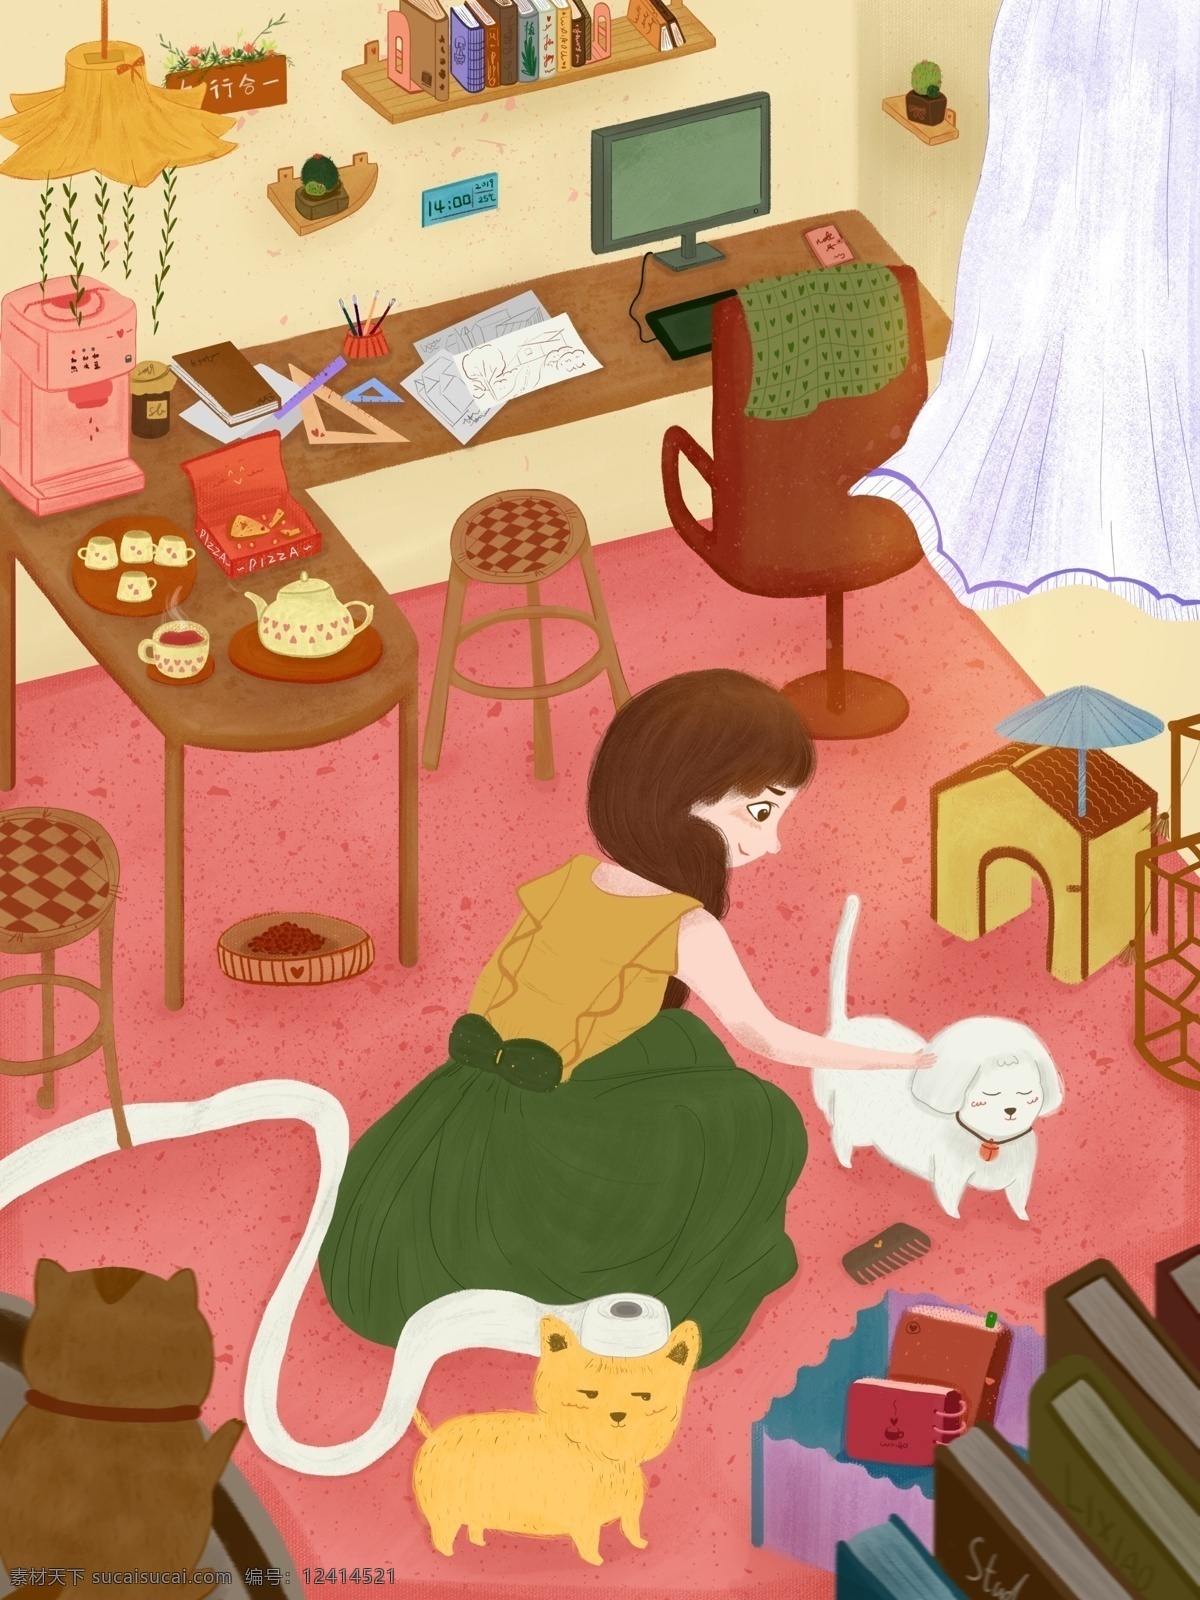 粉色 彩绘 插画 室内 温馨 女孩 撸 狗 背景 粉色背景 广告 浪漫